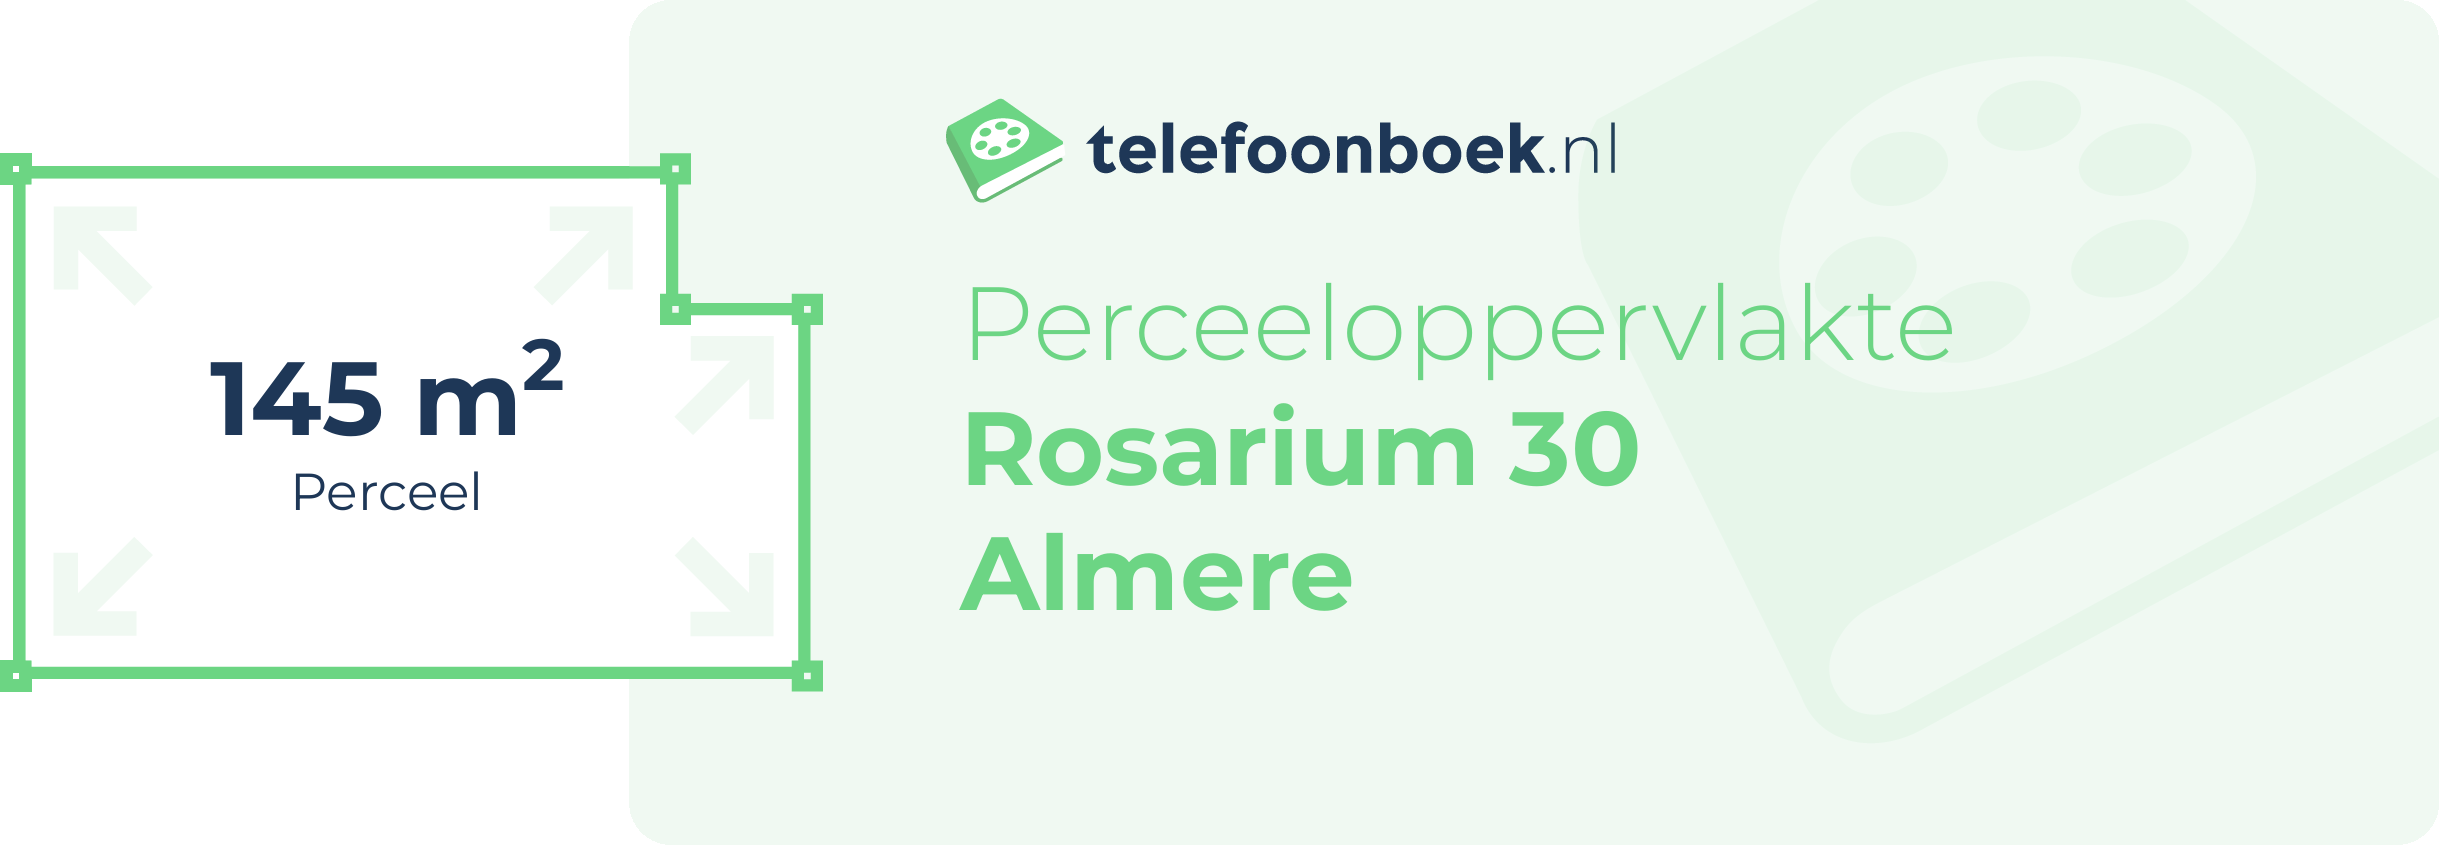 Perceeloppervlakte Rosarium 30 Almere